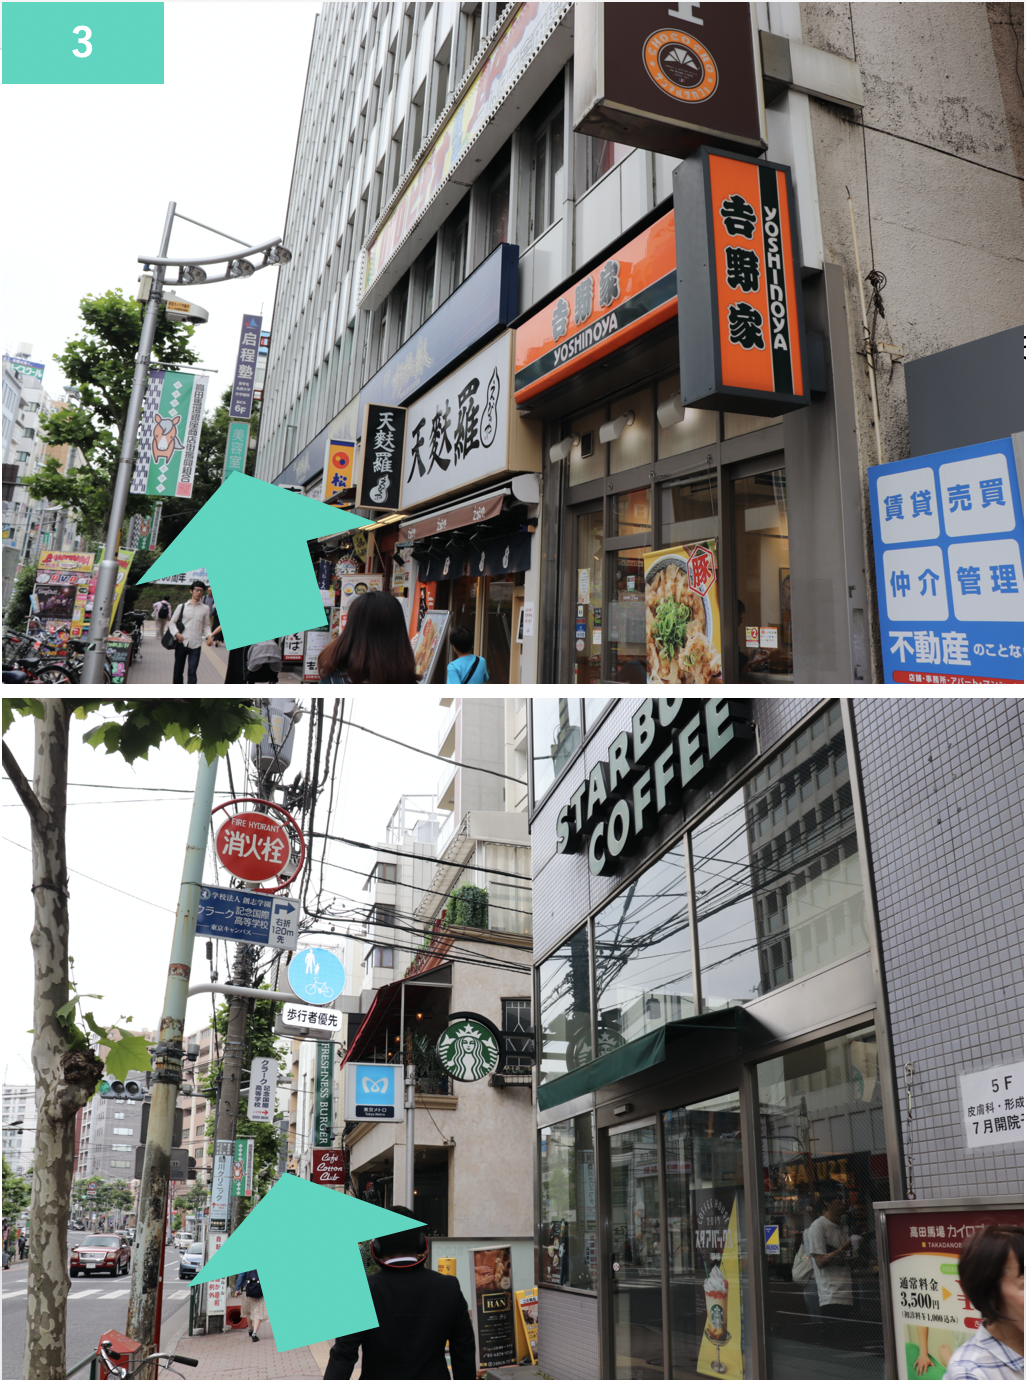 吉野家さんの前を通り過ぎ、そのままスターバックスさん前も通り過ぎ早稲田通りをそのまま直進します